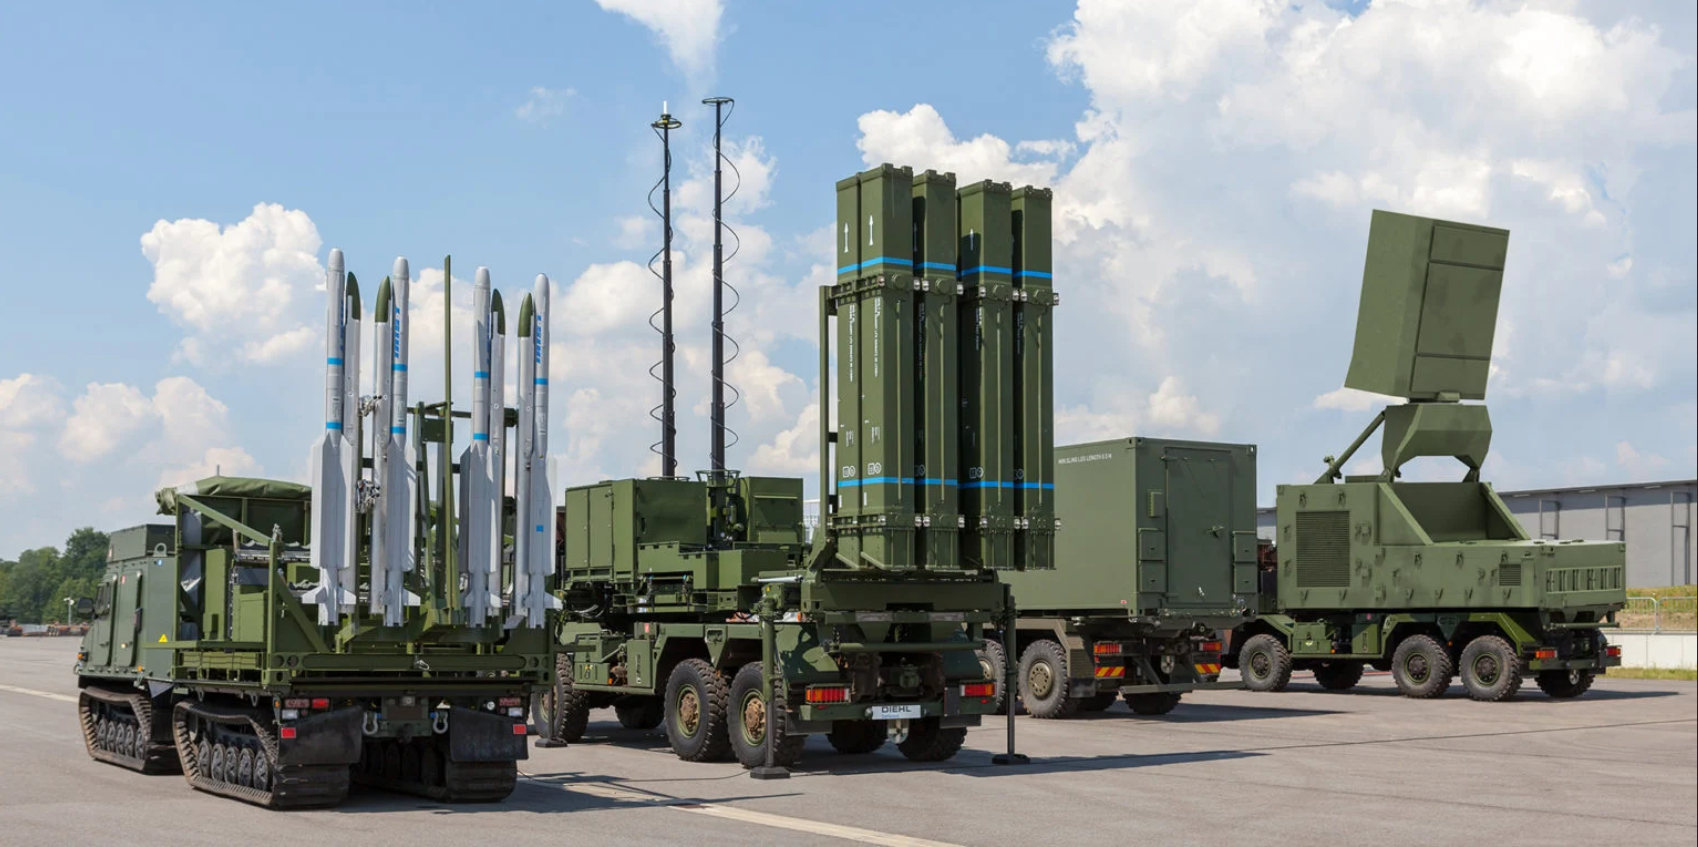 Германия передала Украине первую систему ПВО IRIS-T – Spiegel